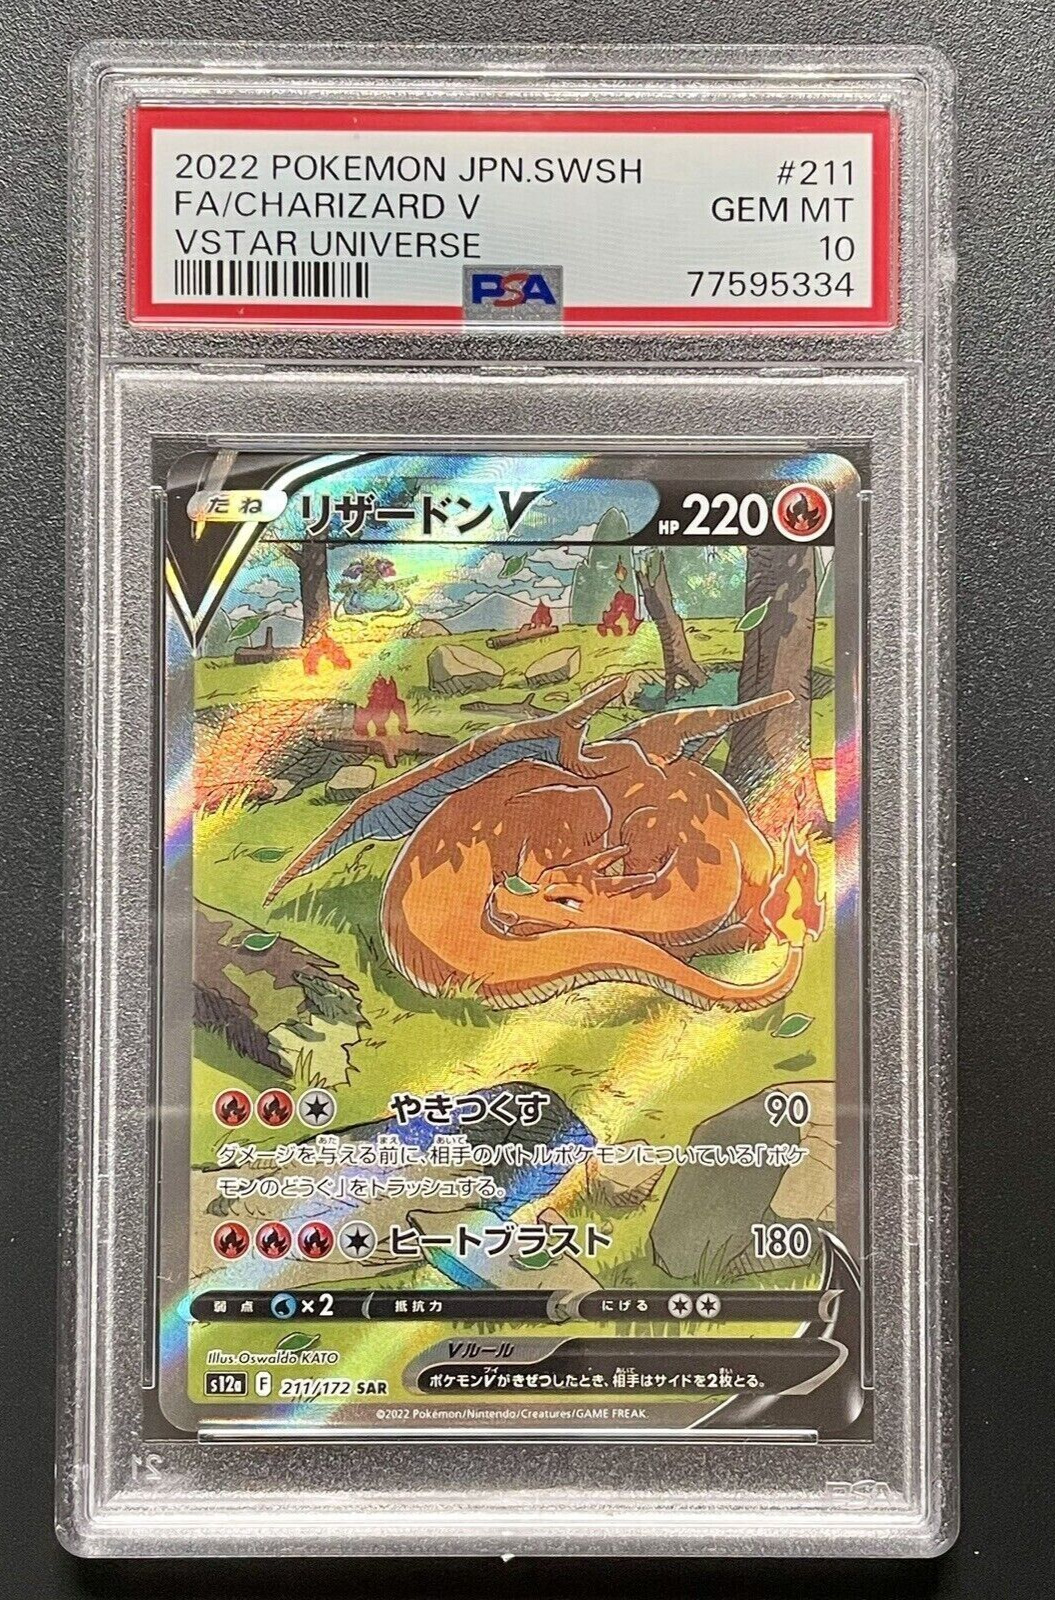 PSA 10 Charizard V - SAR VSTAR Universe - JAPANESE Pokemon Card - 211/172 GEM-MT